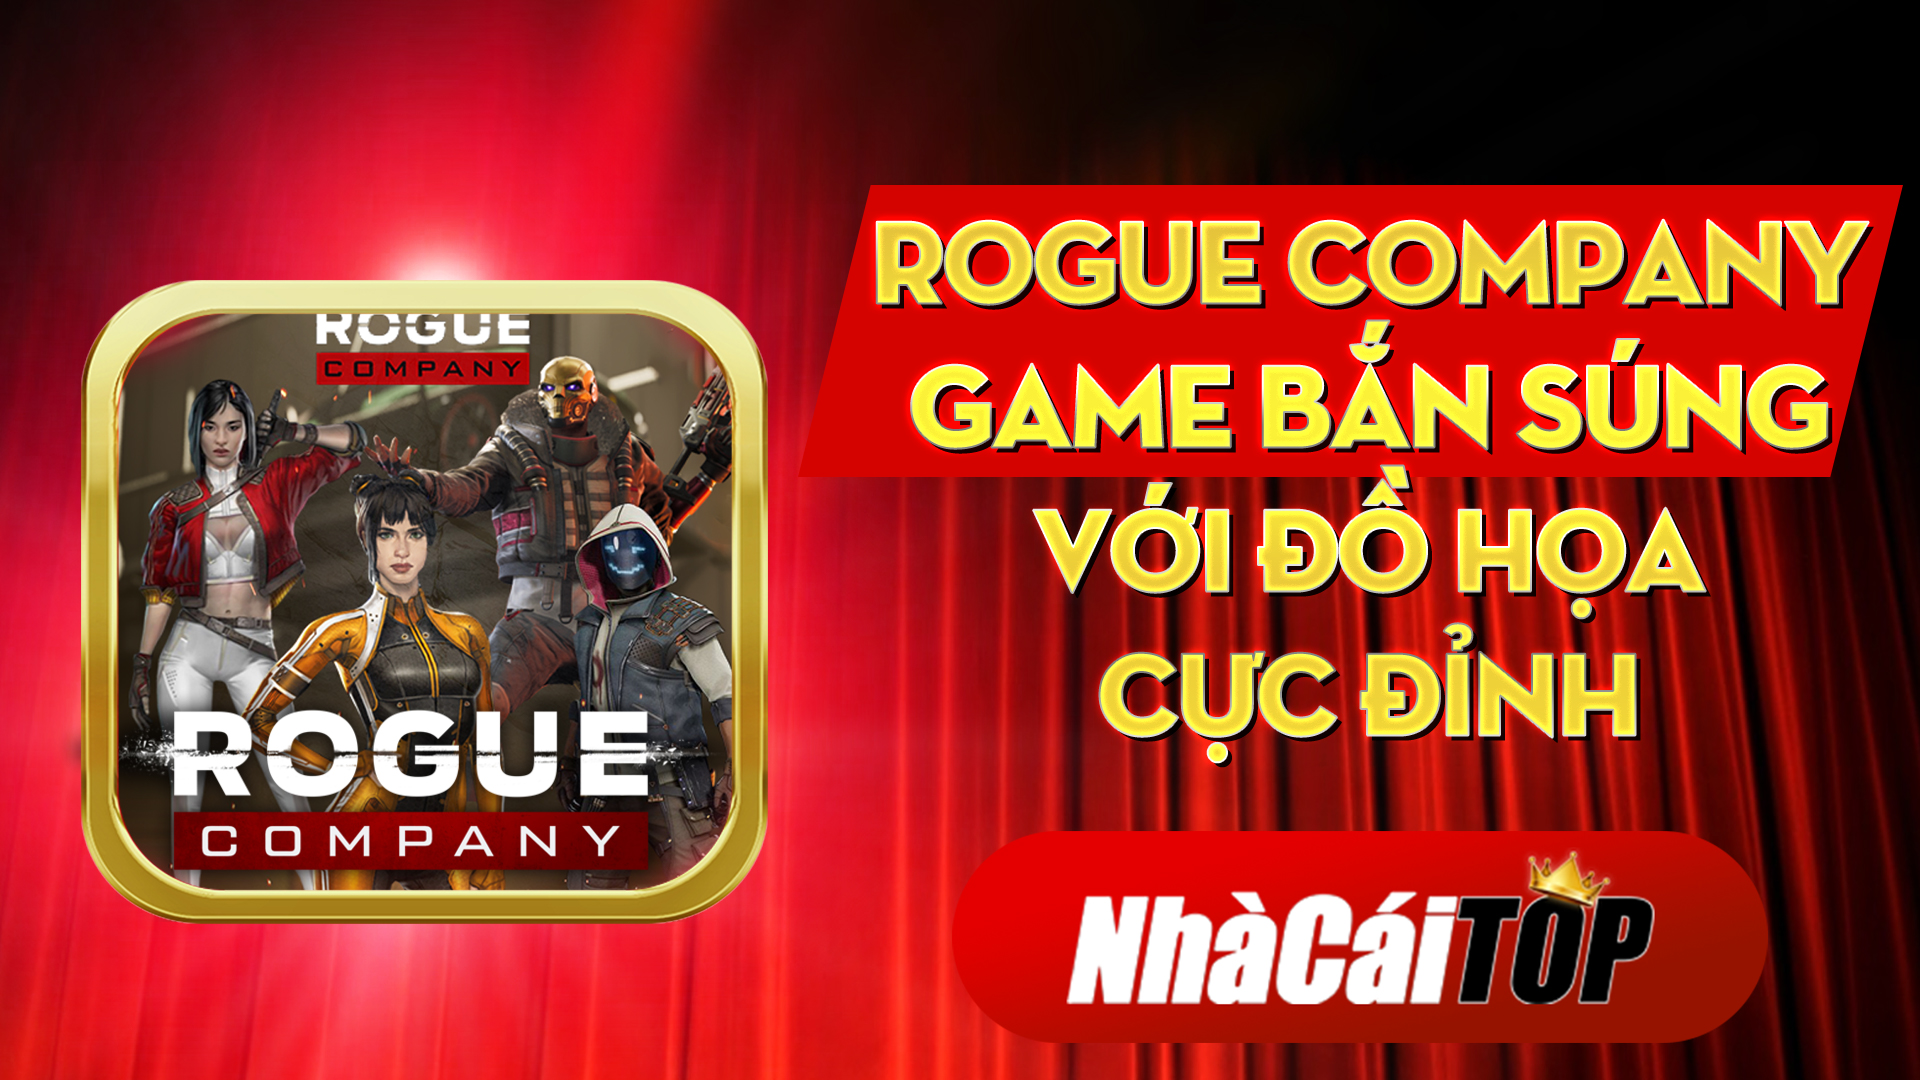 Rogue Company Game Ban Sung Voi Do Hoa Cuc Dinh